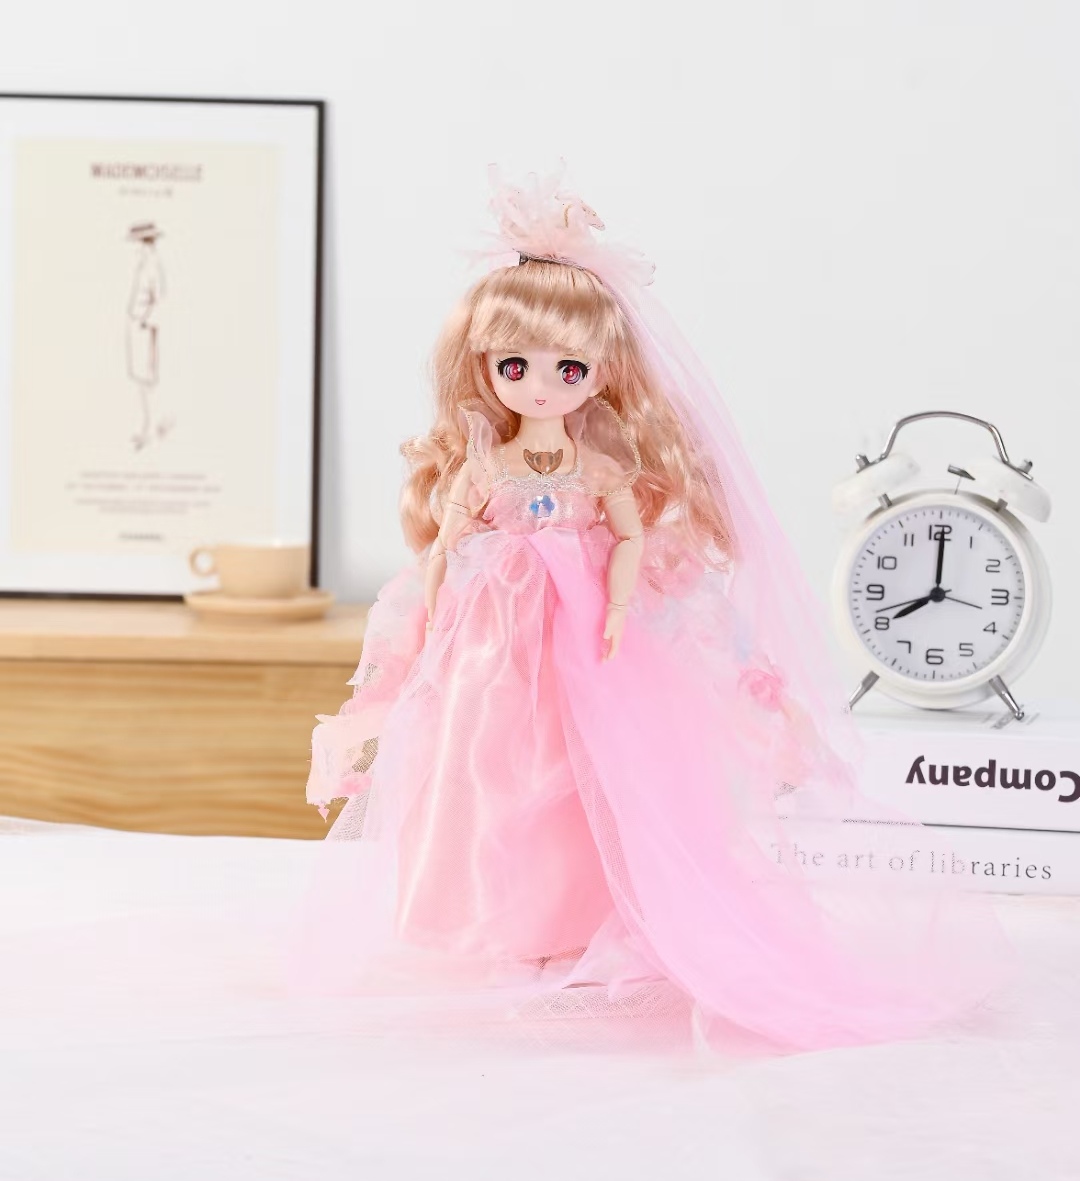 义乌市欧娜玩具有限公司经营销售各种风格不同的芭比娃娃，欢迎全球各地客商前来采购批发！